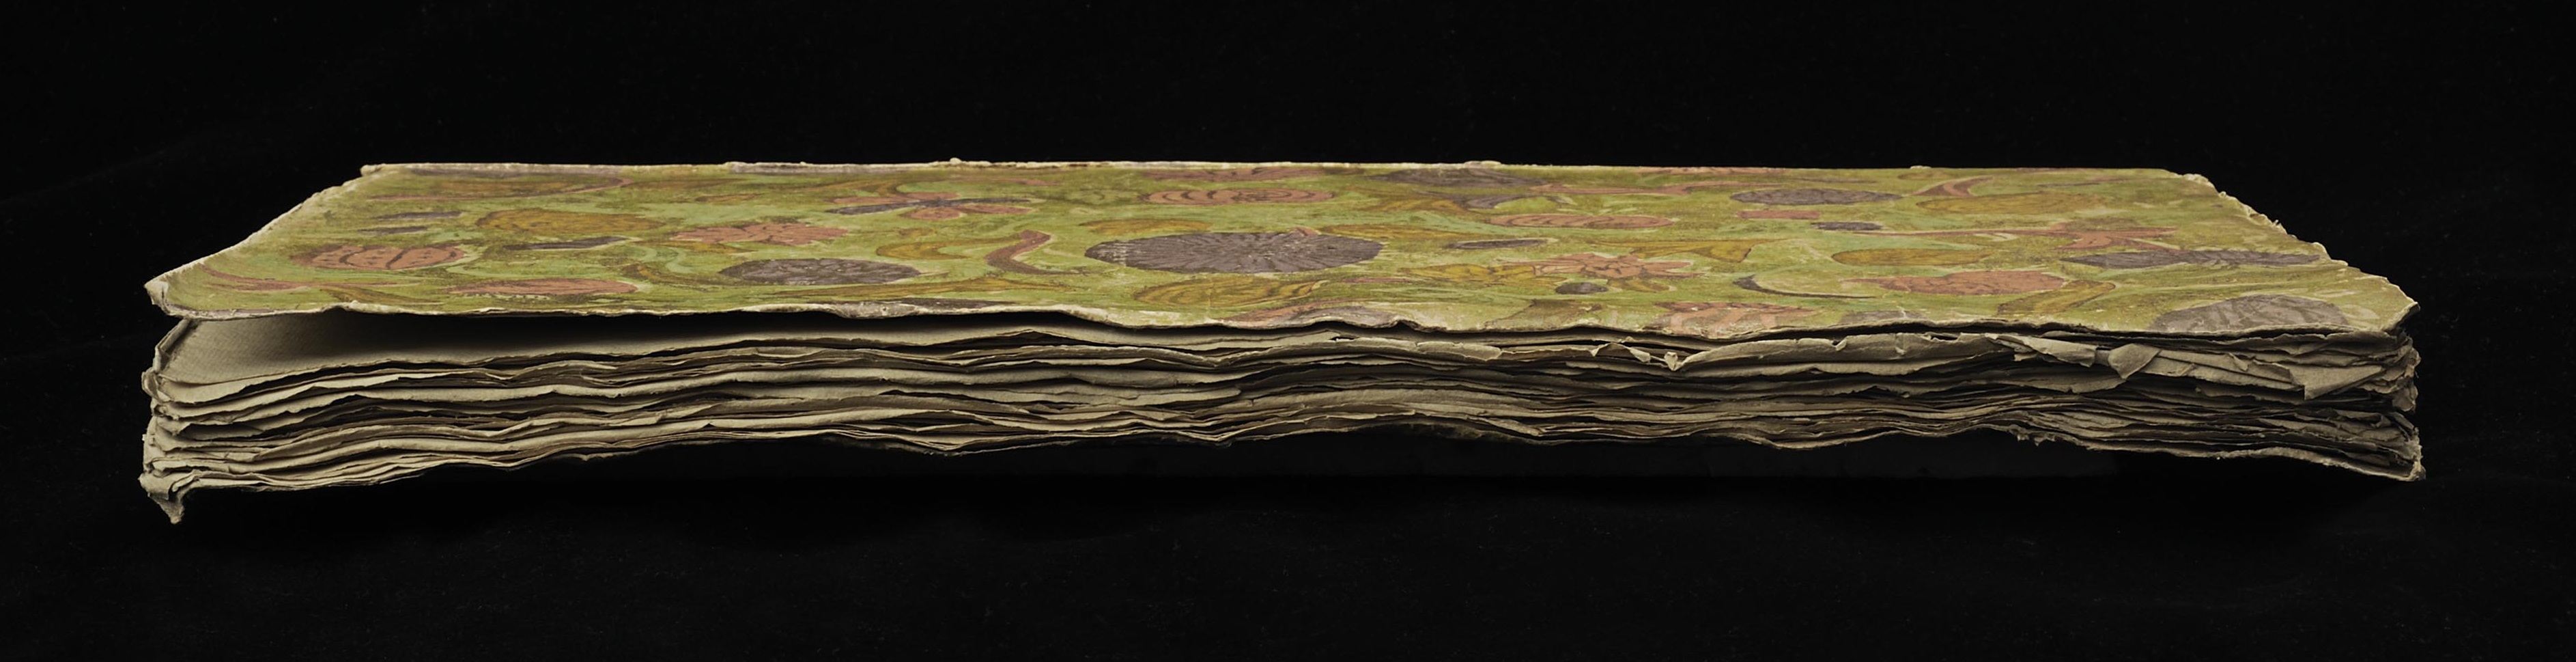 Ett oskuret boksnitt på en liggande bok med pappersomslag tryckt i klara färger.